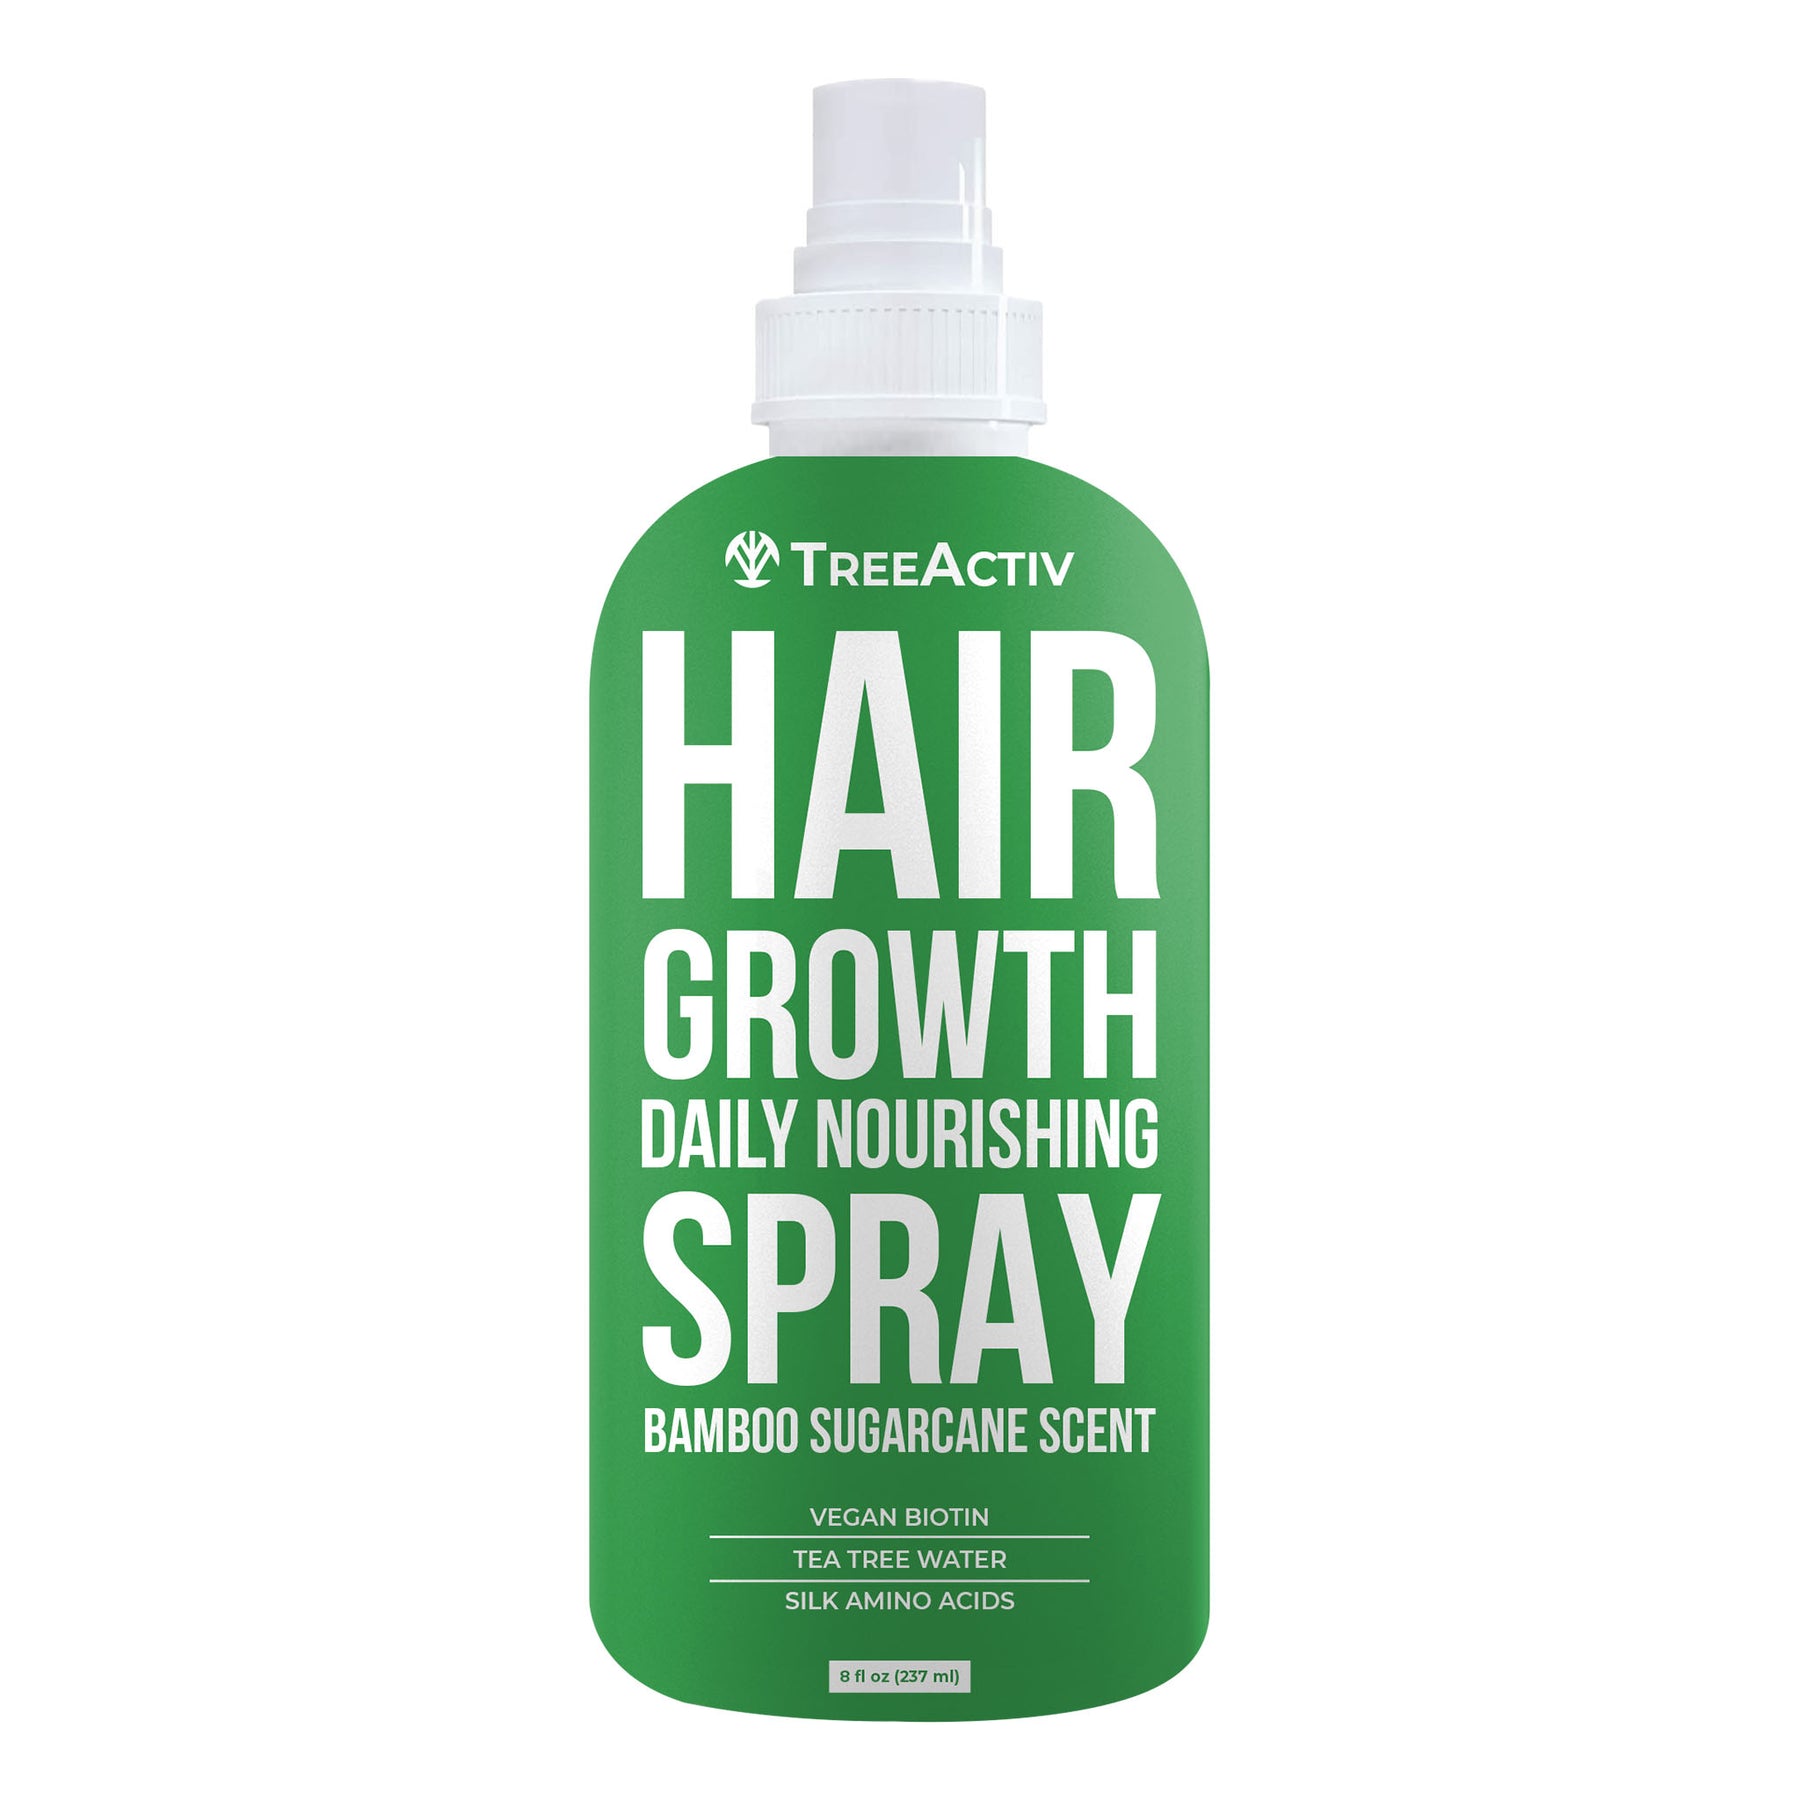  TreeActiv Hair Growth Daily Nourishing Spray